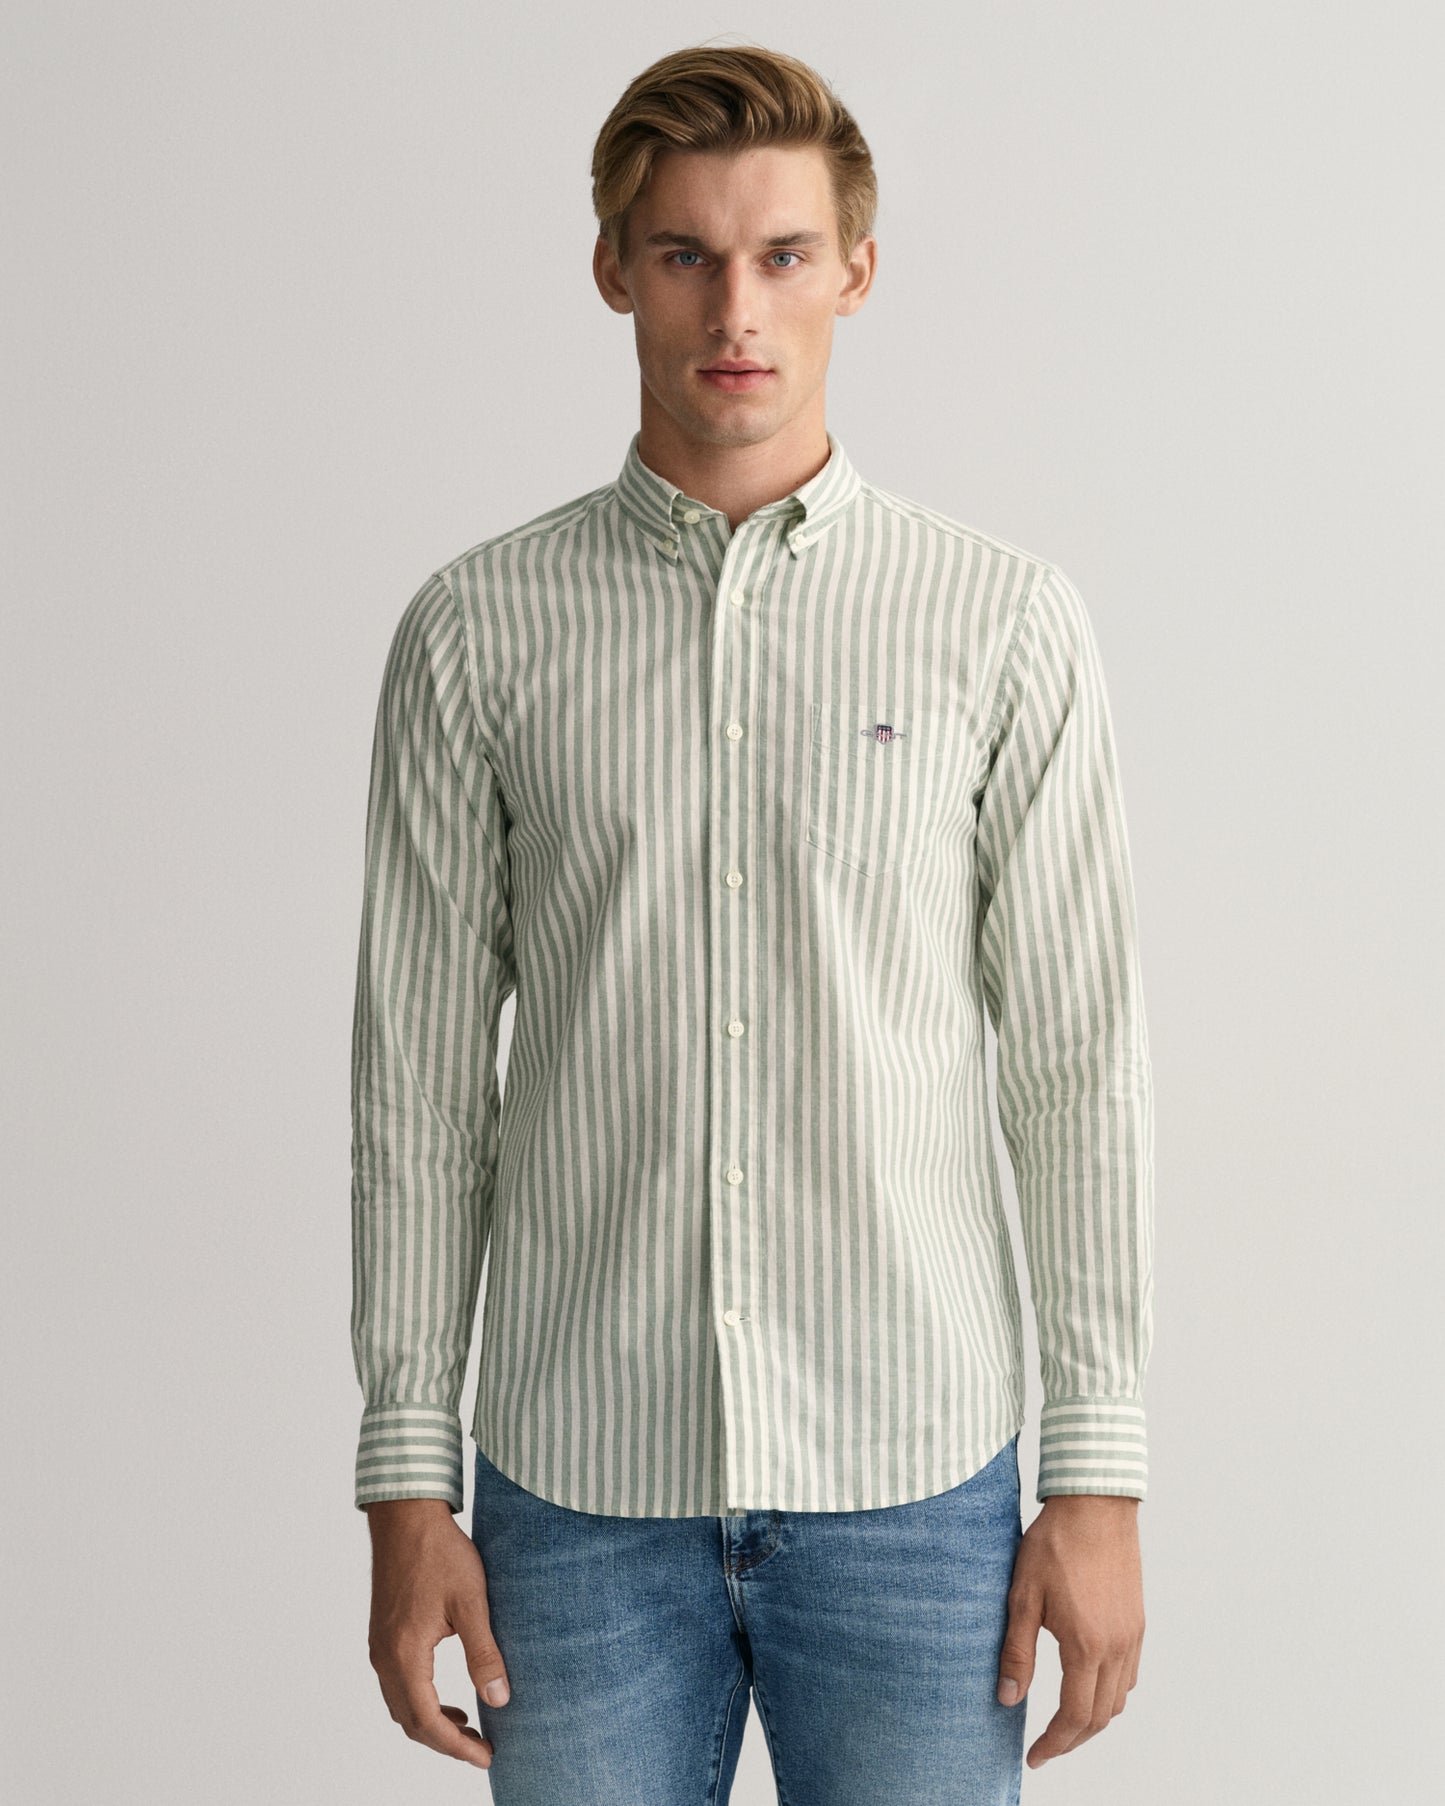 Gant Cotton/Linen Strp Reg LS Shirt Kal. Green